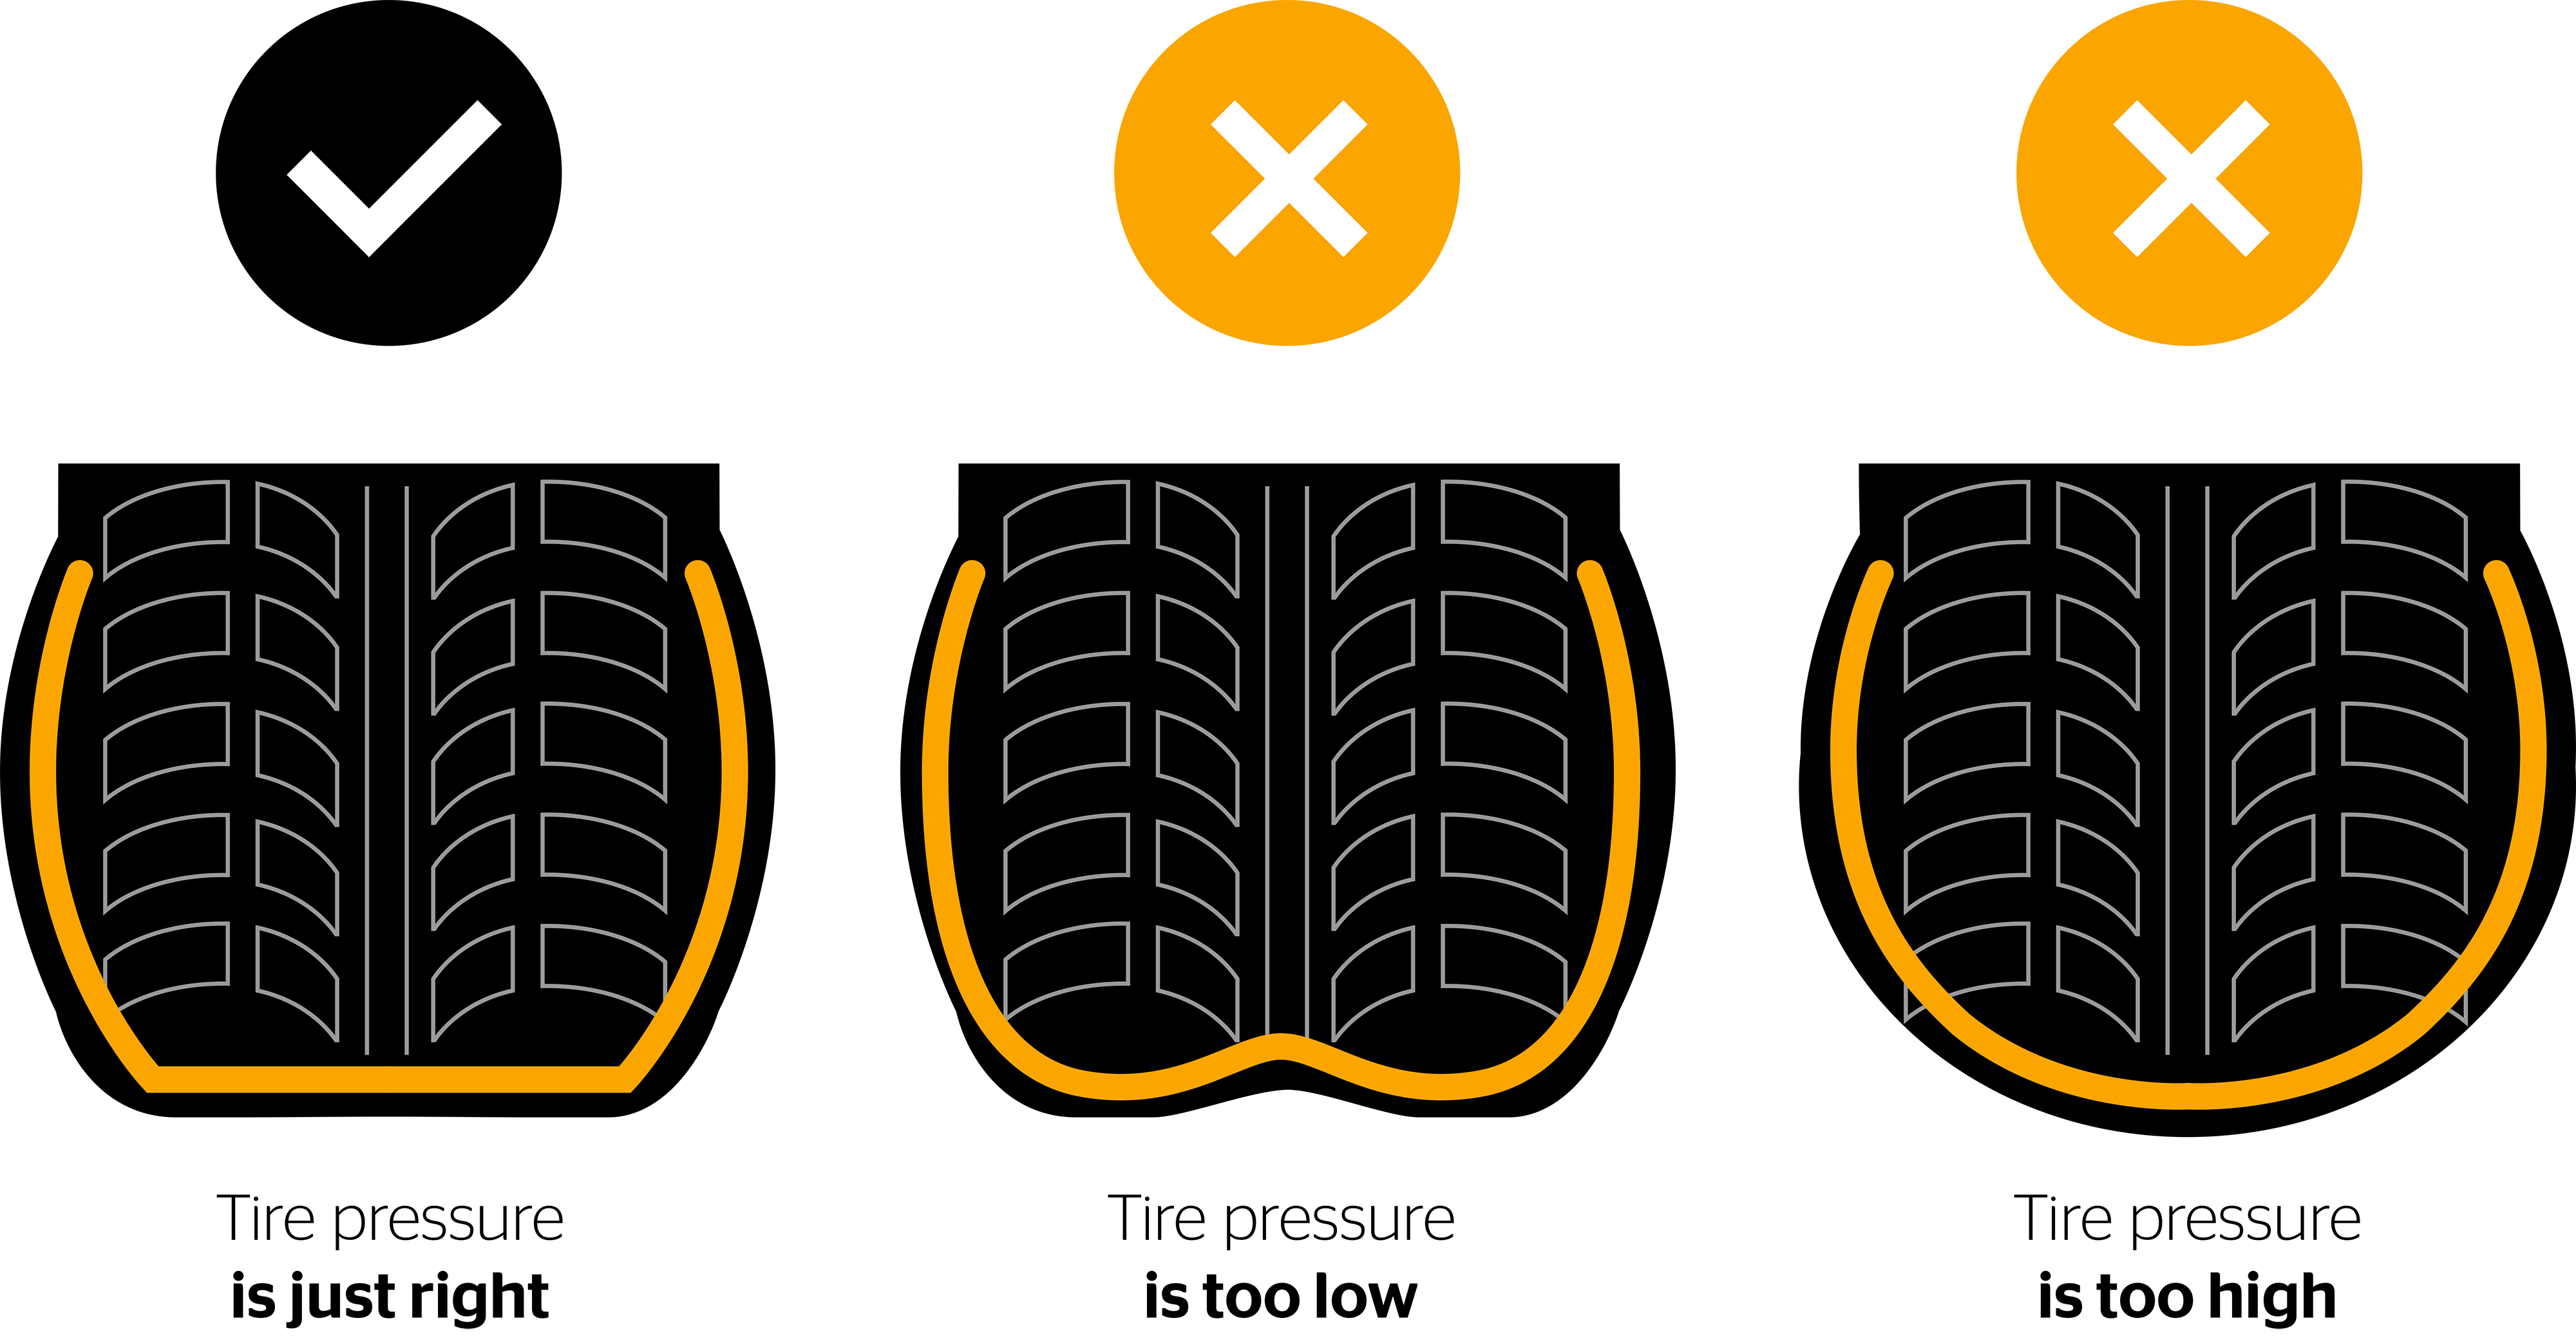 Pressione pneumatici - La sicurezza al primo posto